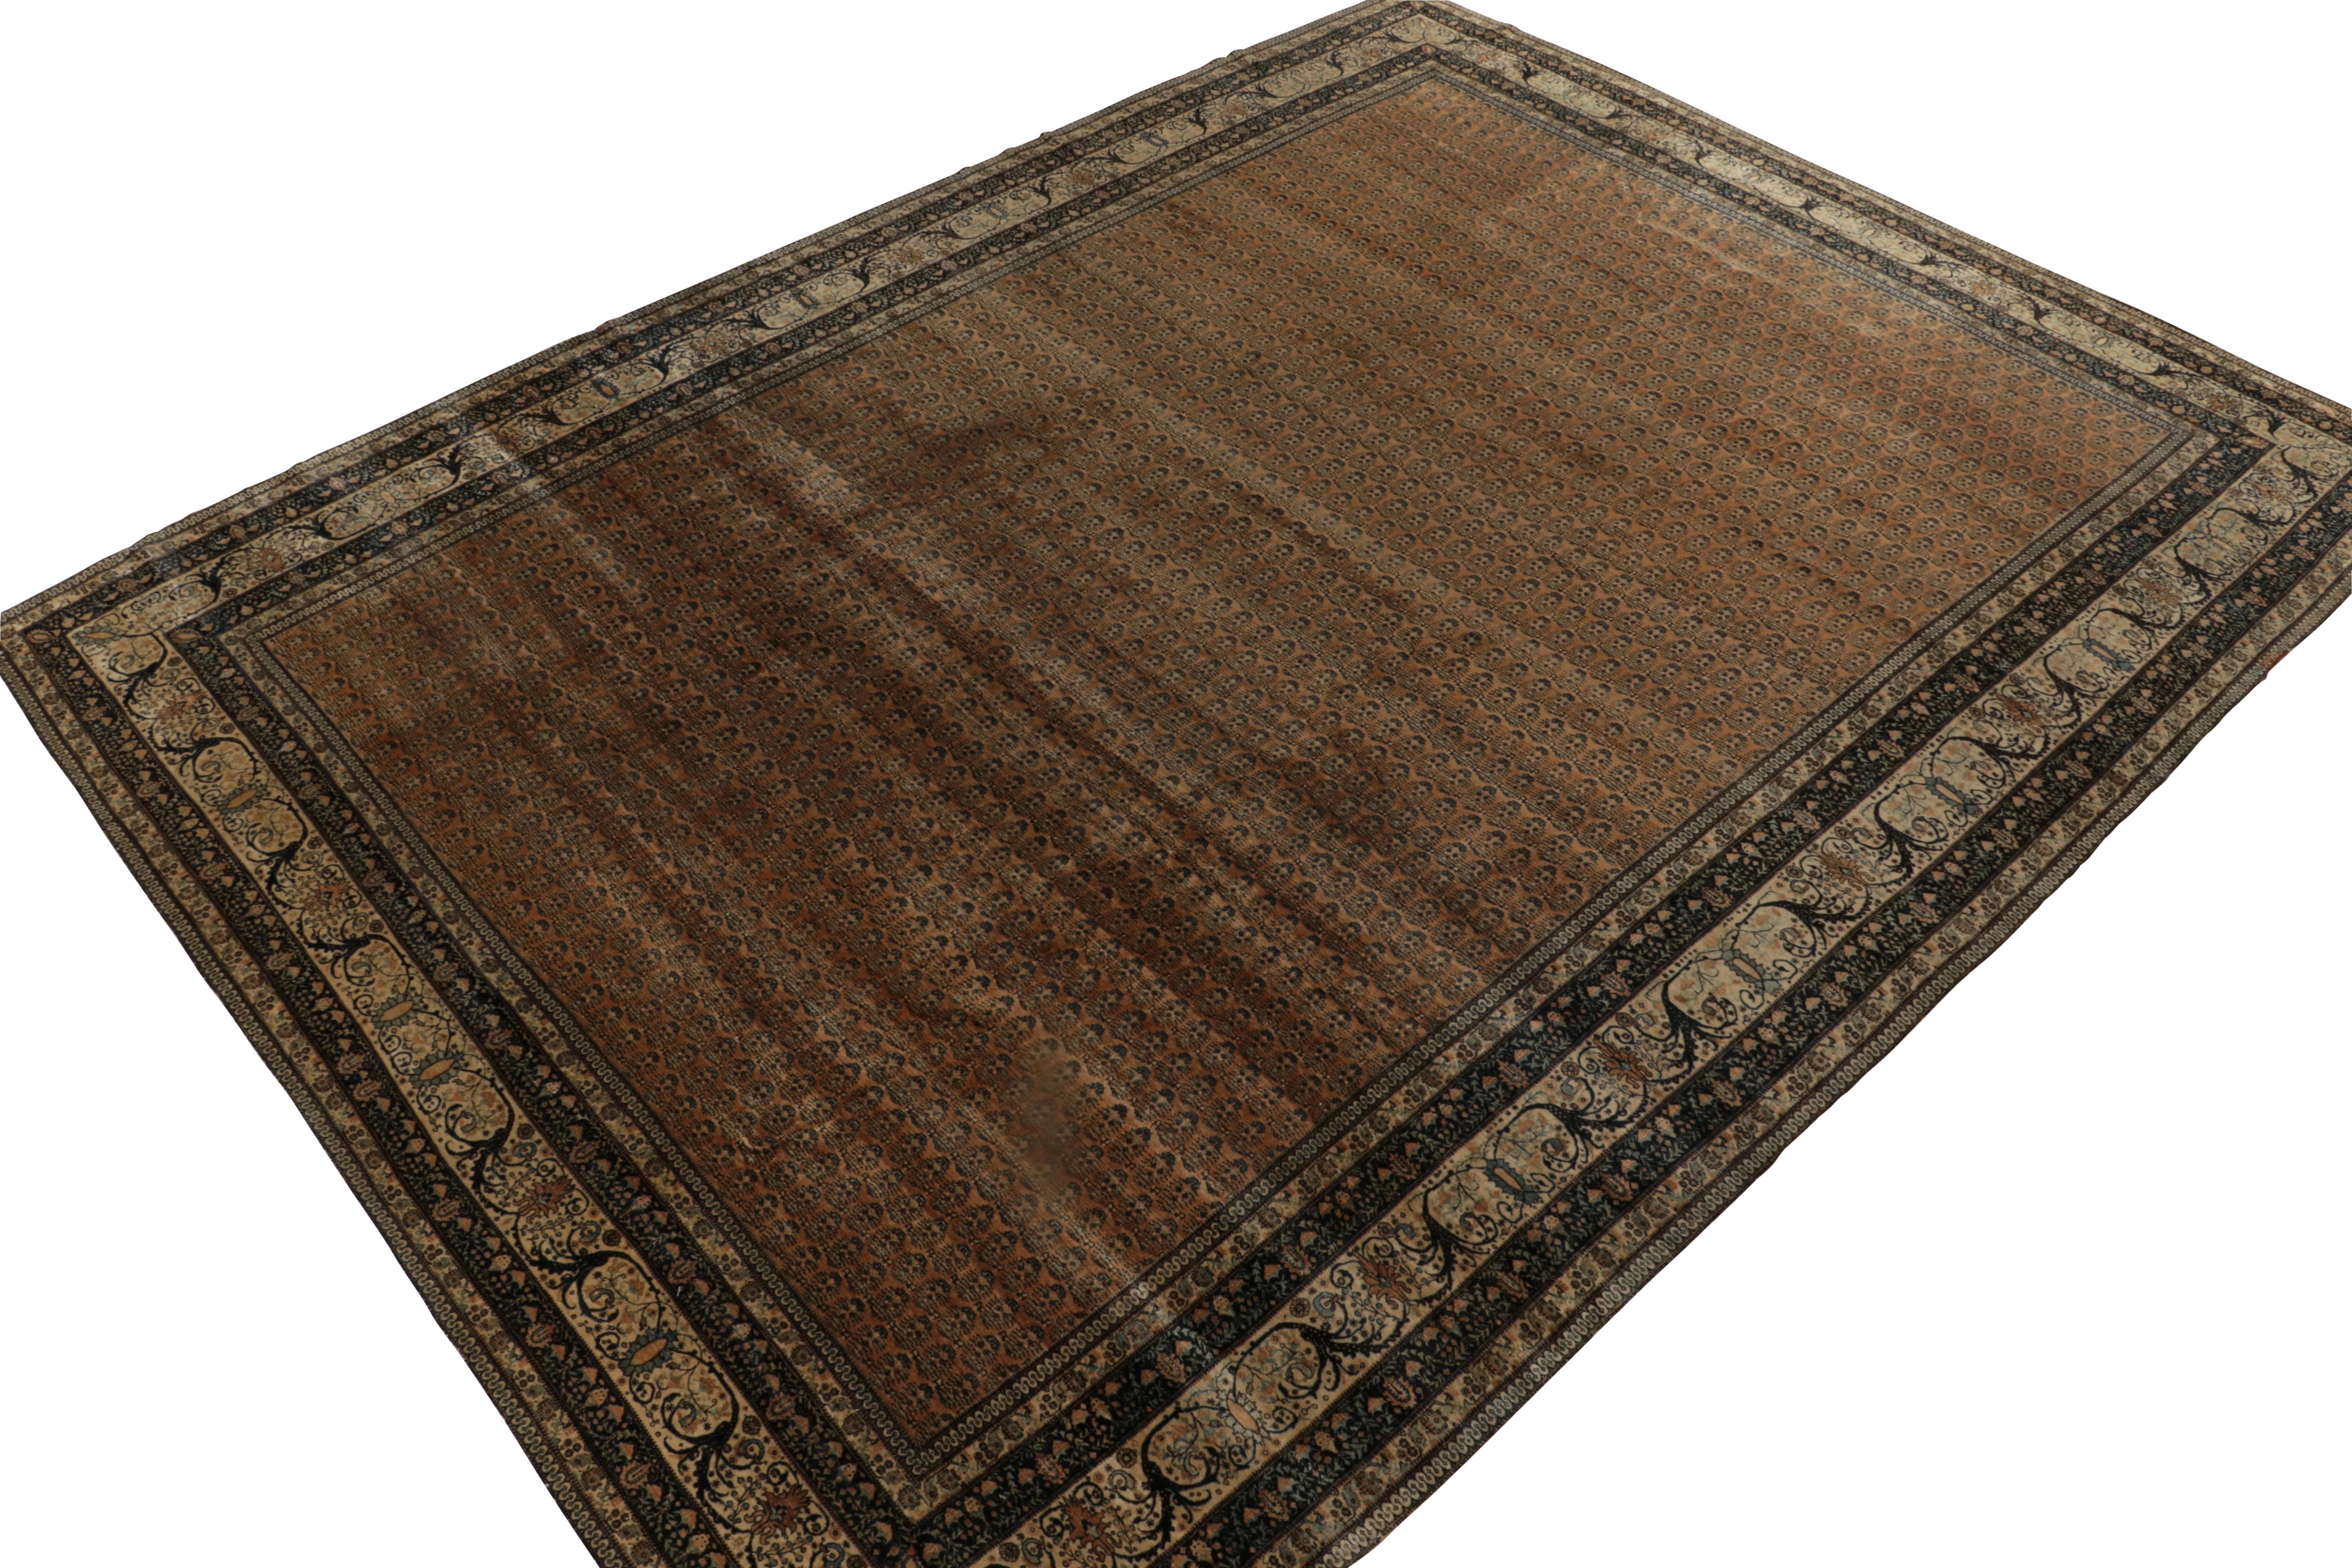 Handgeknüpft in Wolle um 1920-1930, ein 10x15 antiker Täbris Teppich, der zu den beliebtesten klassischen persischen Kurationen gehört. 

Der Teppich ist ein fein detailliertes Stück mit Wiederholungen, die mit der Herkunft dieses Musters